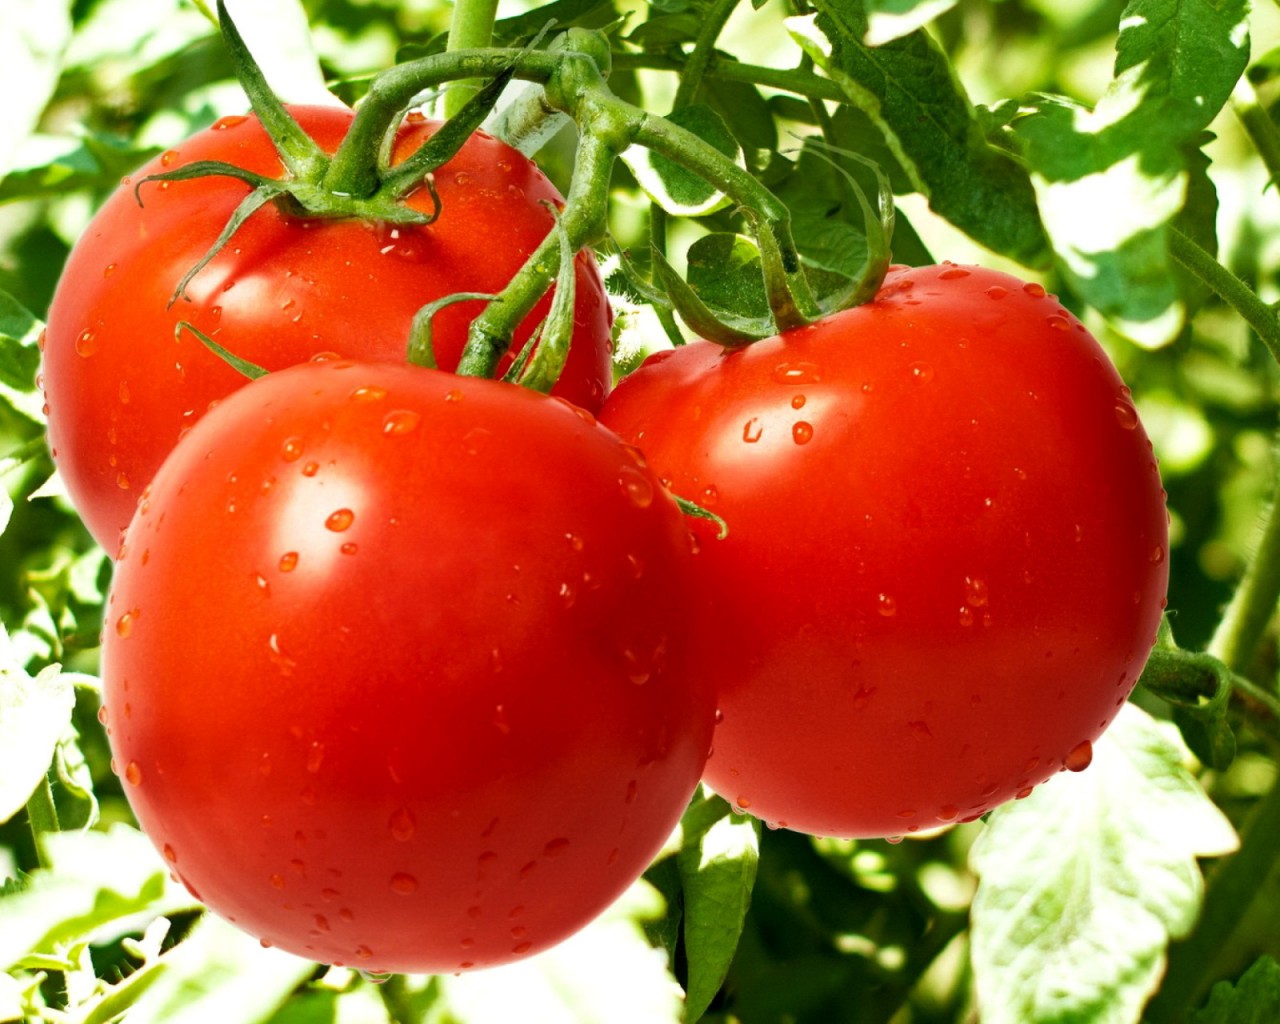 Картинки по запросу Полив помидоров для быстрого образования завязей: проверенные народные средства